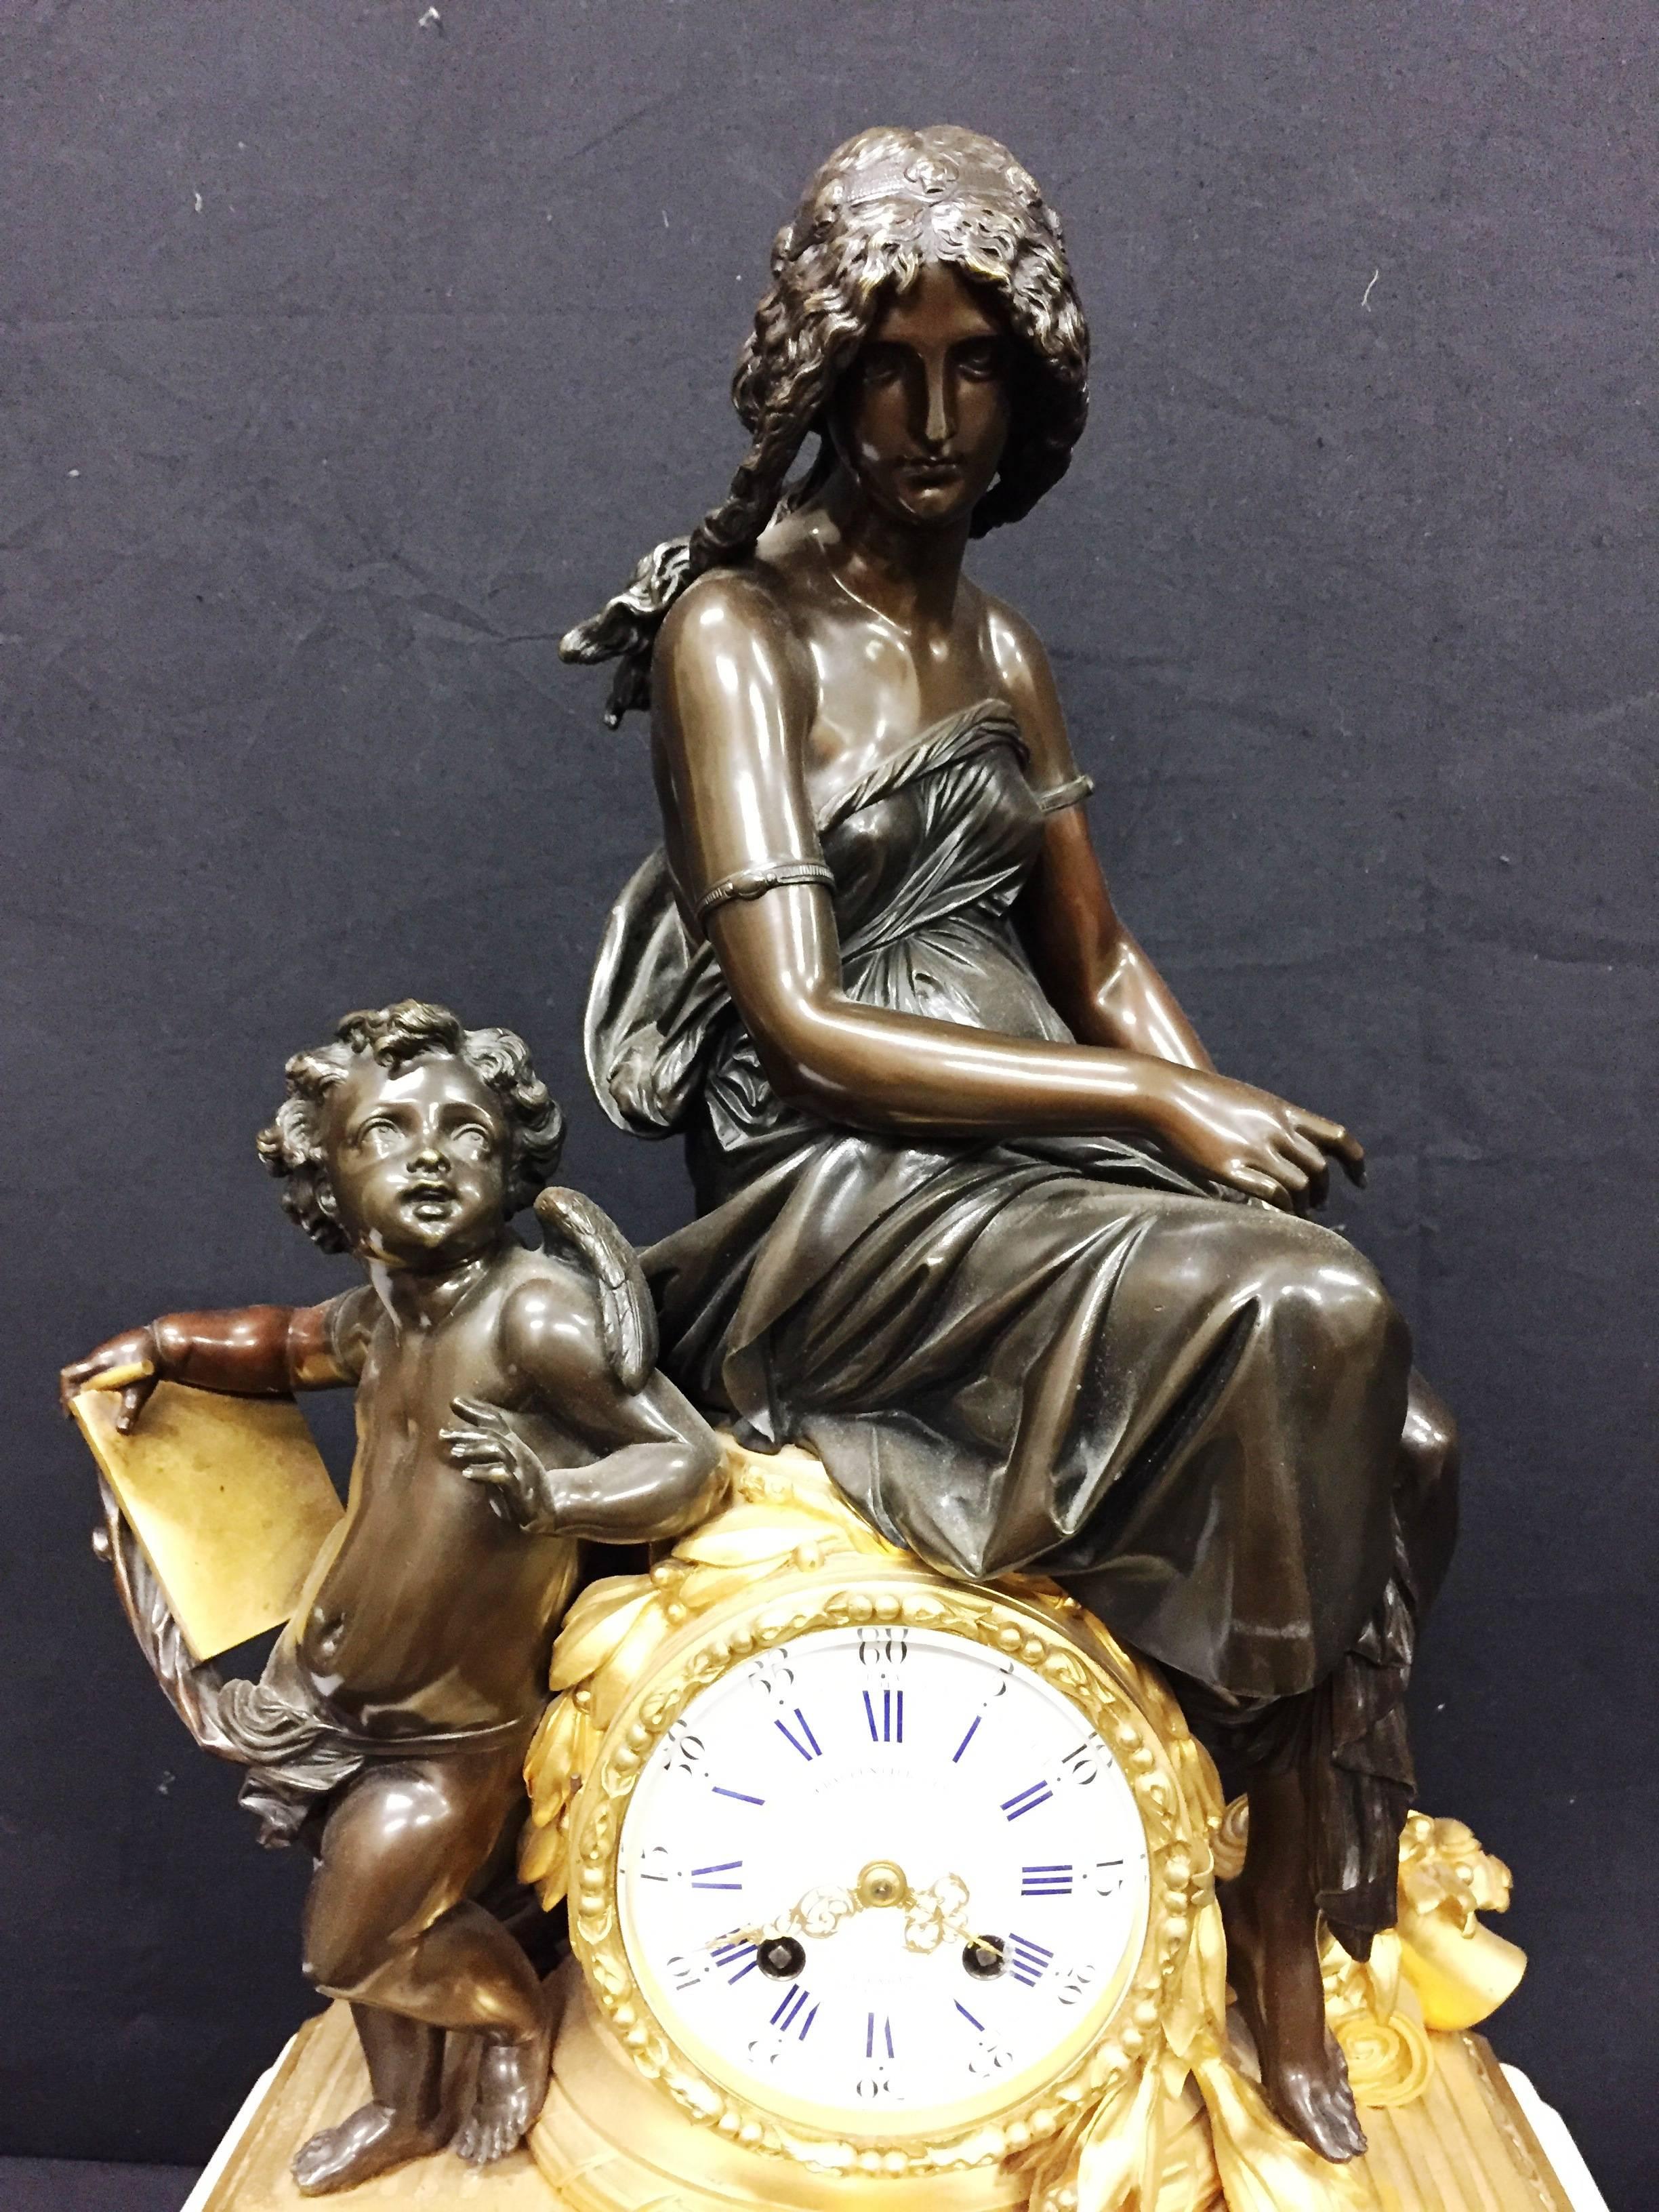 Reloj de chimenea francés del siglo XIX, de bronce y ormolina dorada, de muy buena calidad, con una madre y su hijo encima y a un lado de la esfera. Montado sobre una base de mármol blanco.